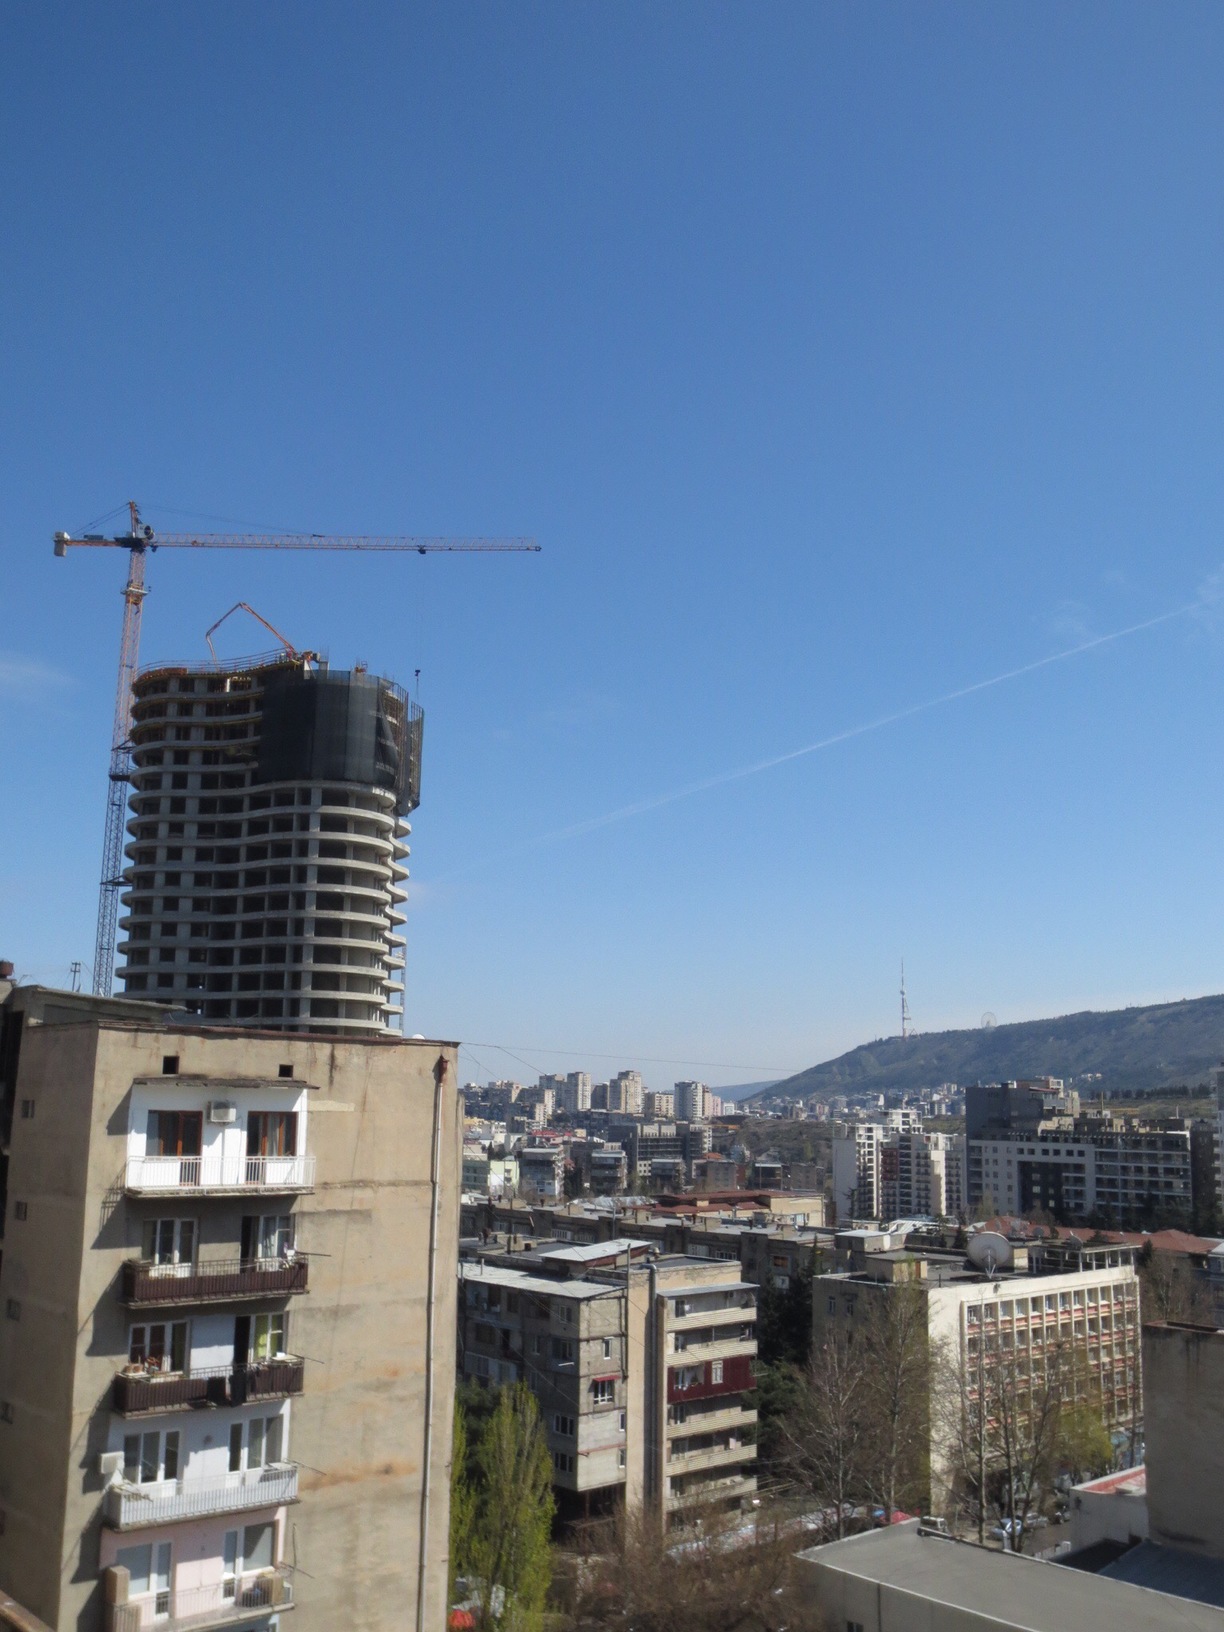 Delisi, Tbilisi, Georgia - Tbilisi city scene - construction crane...